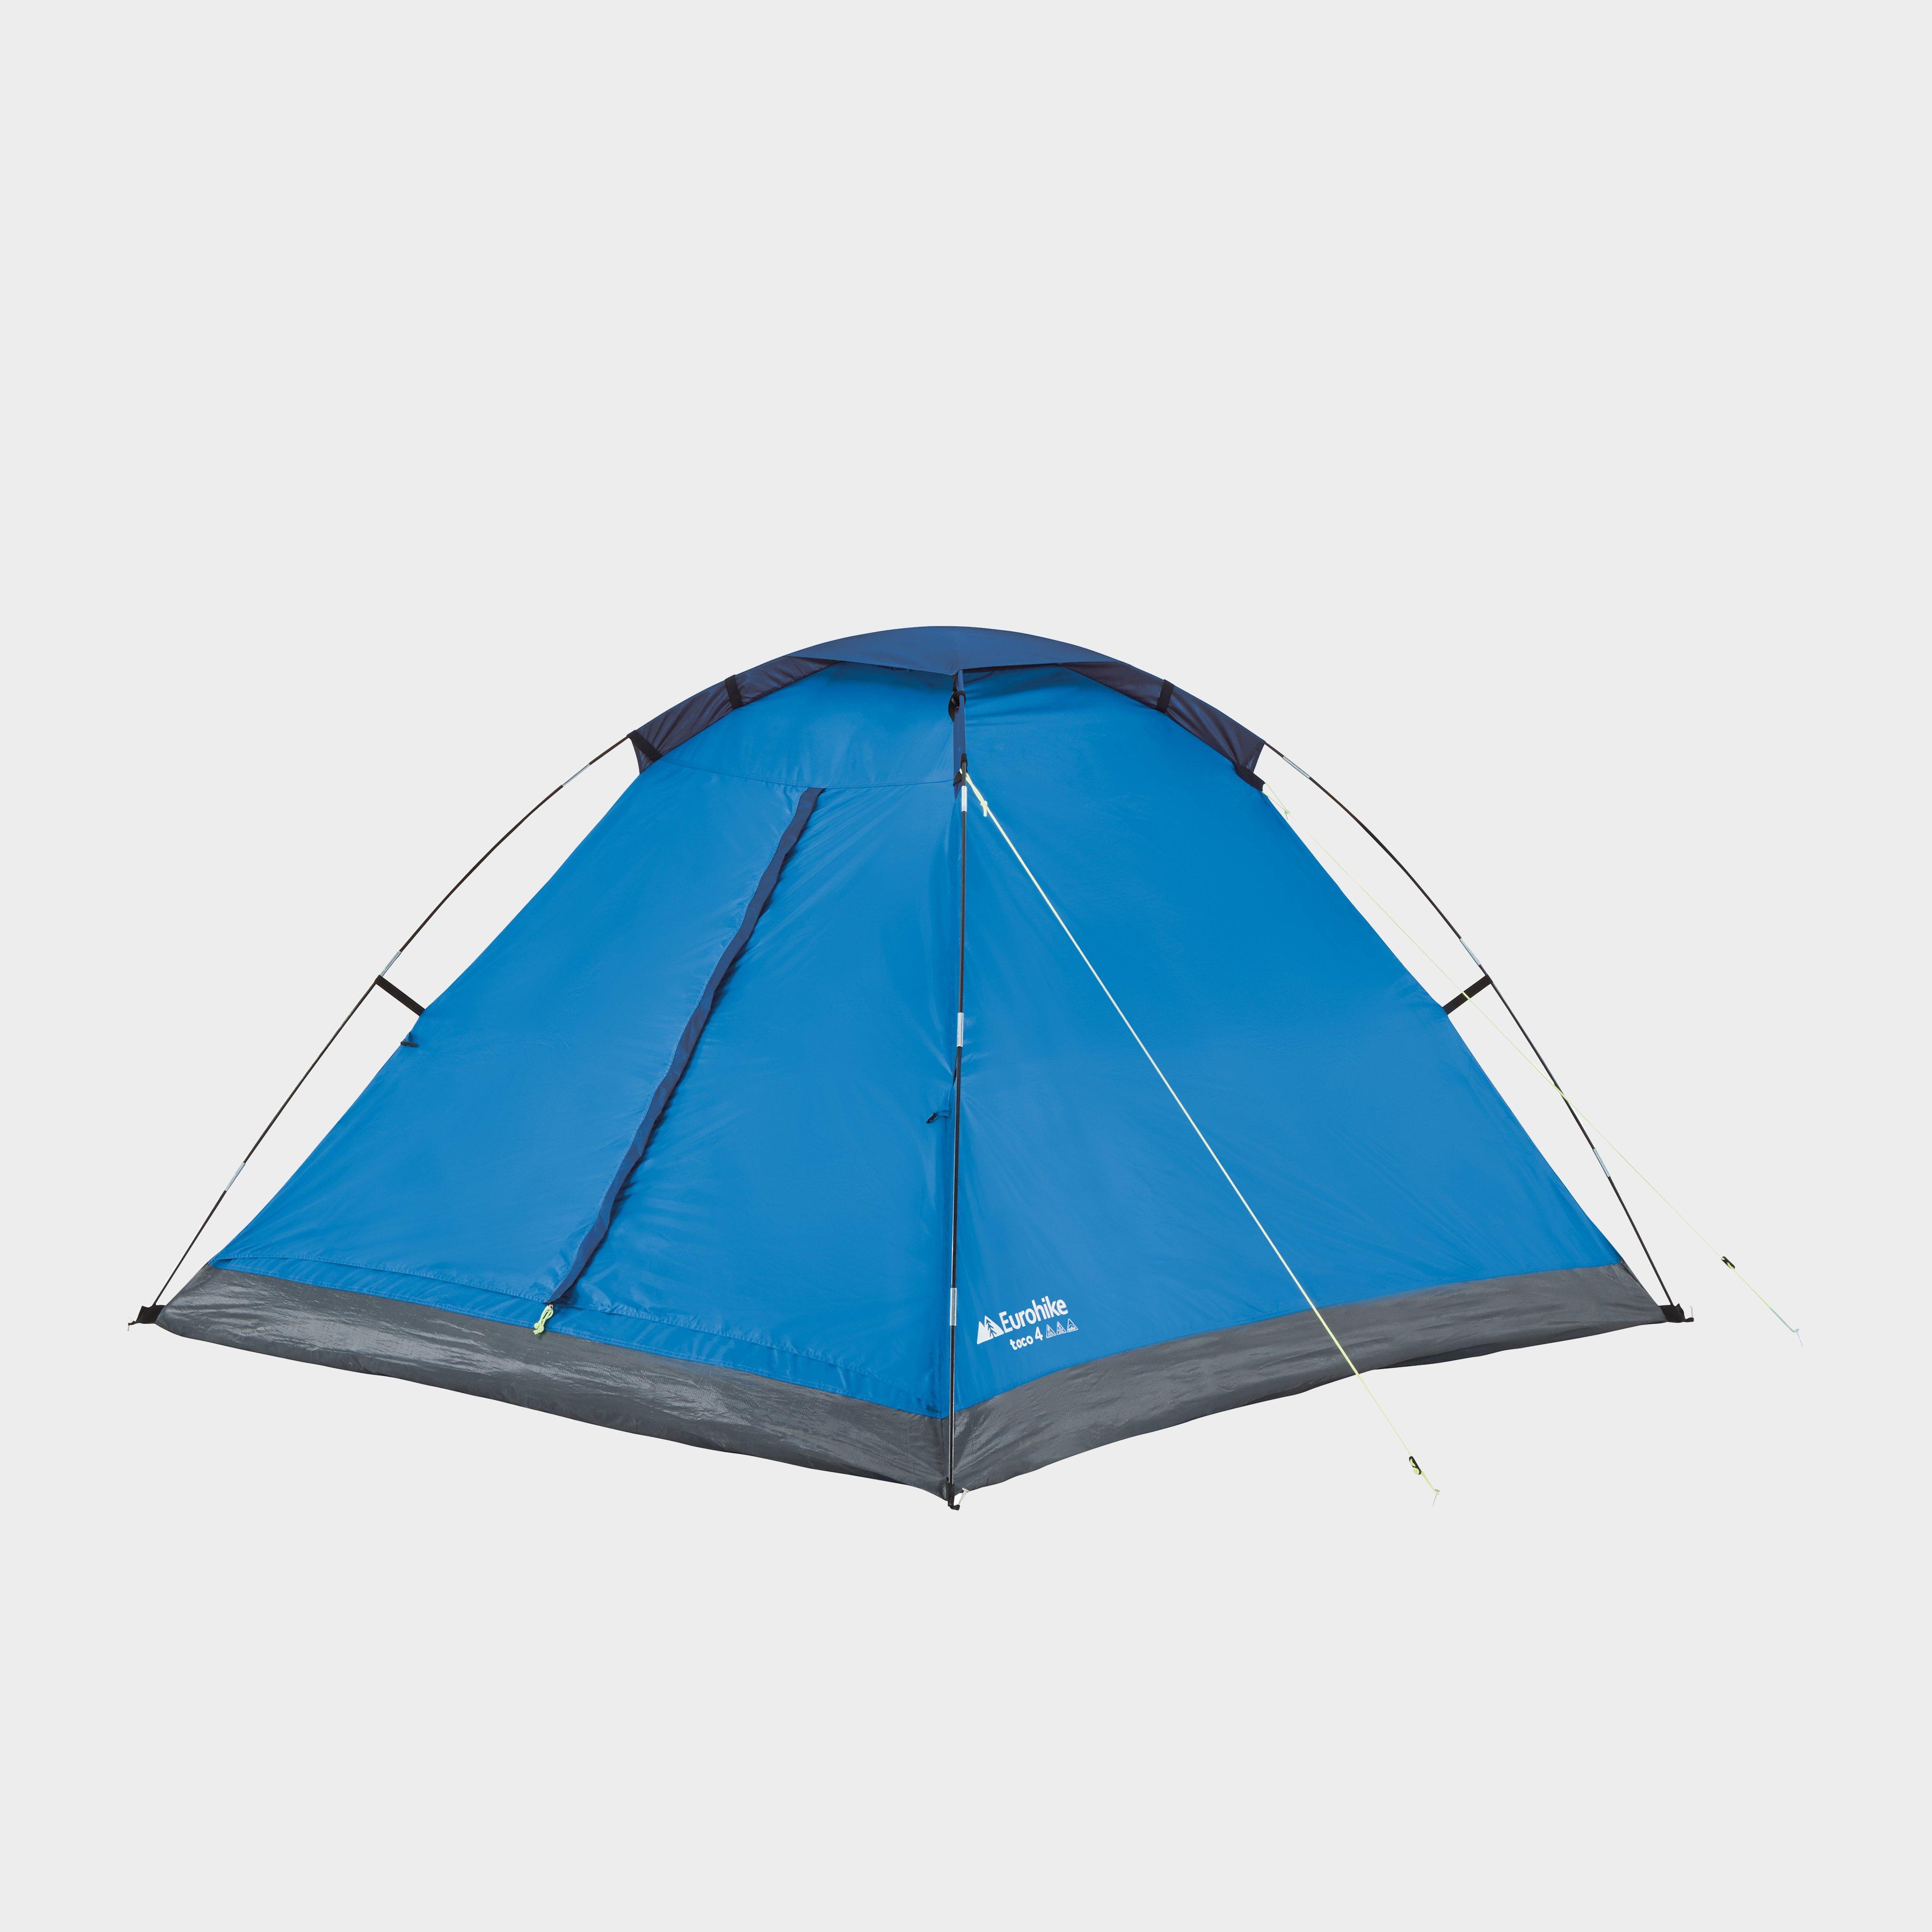  Eurohike Toco 4 Dome Tent, Blue